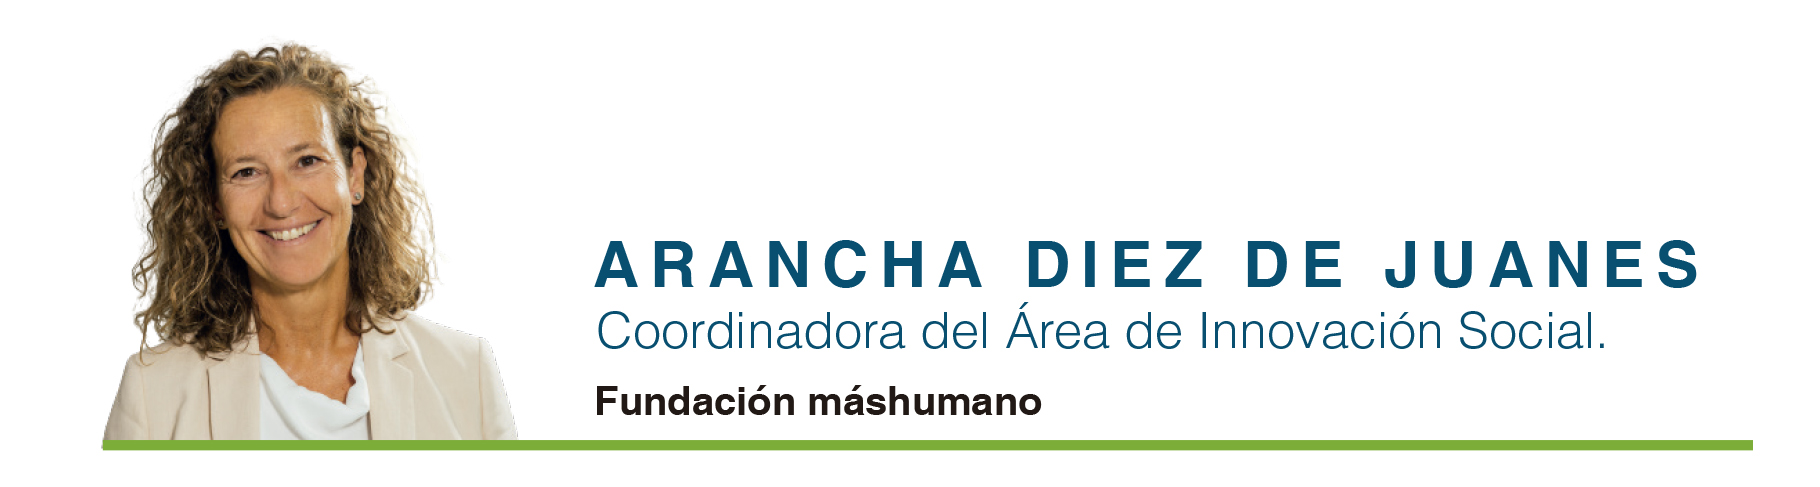 Arancha Diaz de Juanes firma Fundacion mashumano